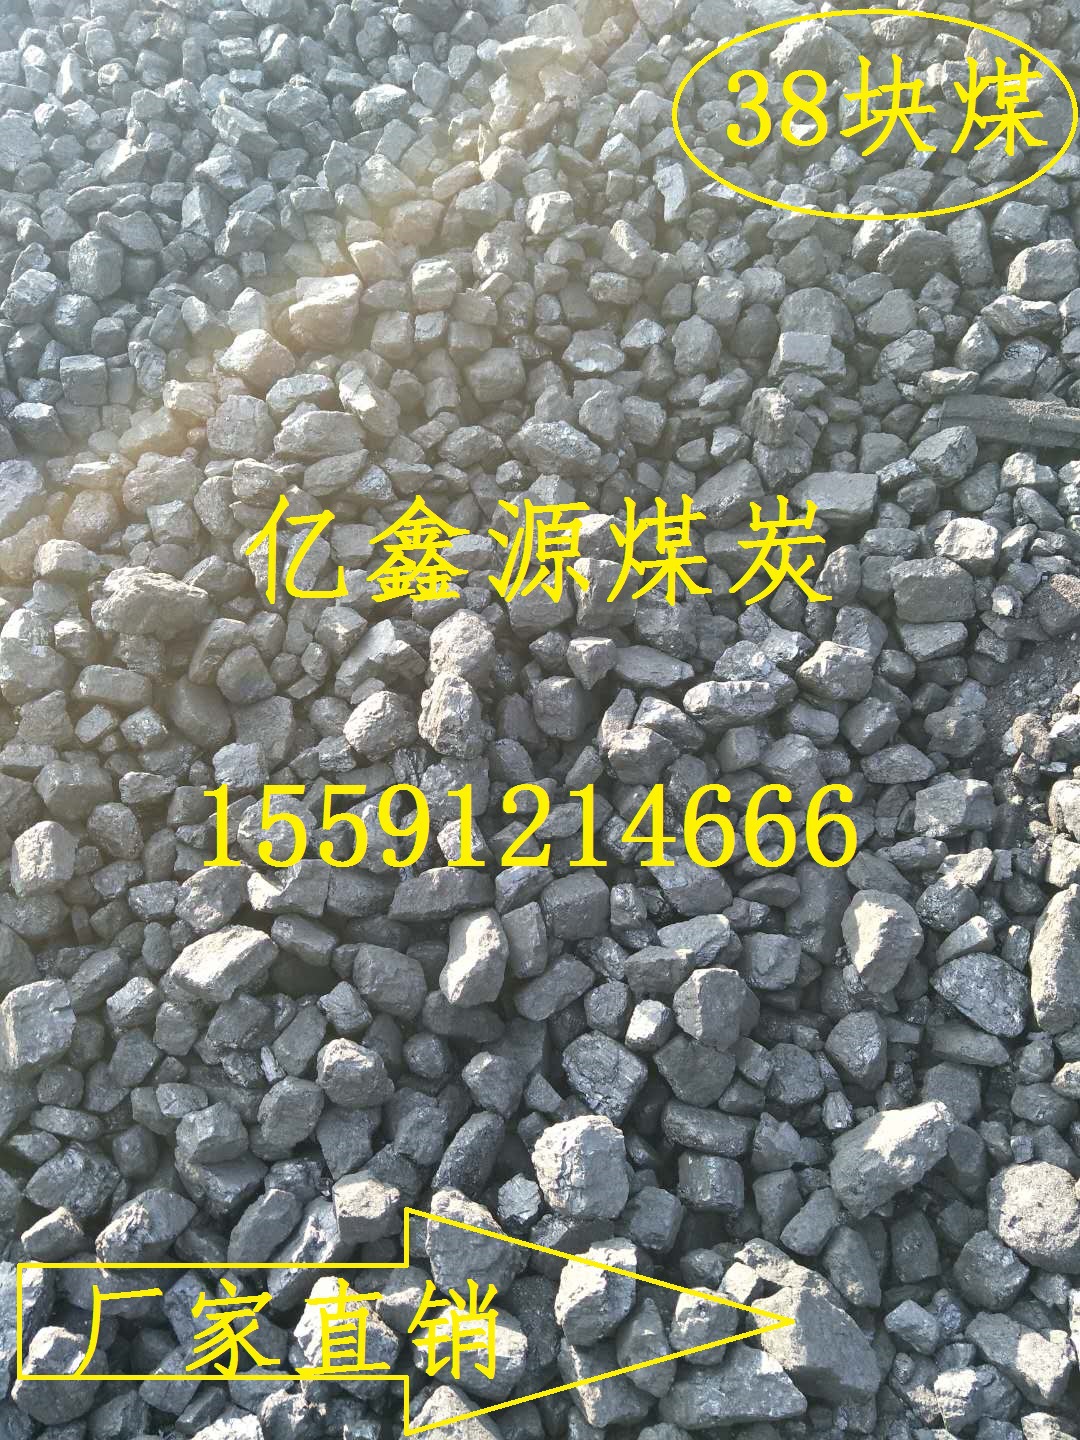 销售陕西煤炭价格13小籽煤12籽煤25籽煤炭批发价格示例图2